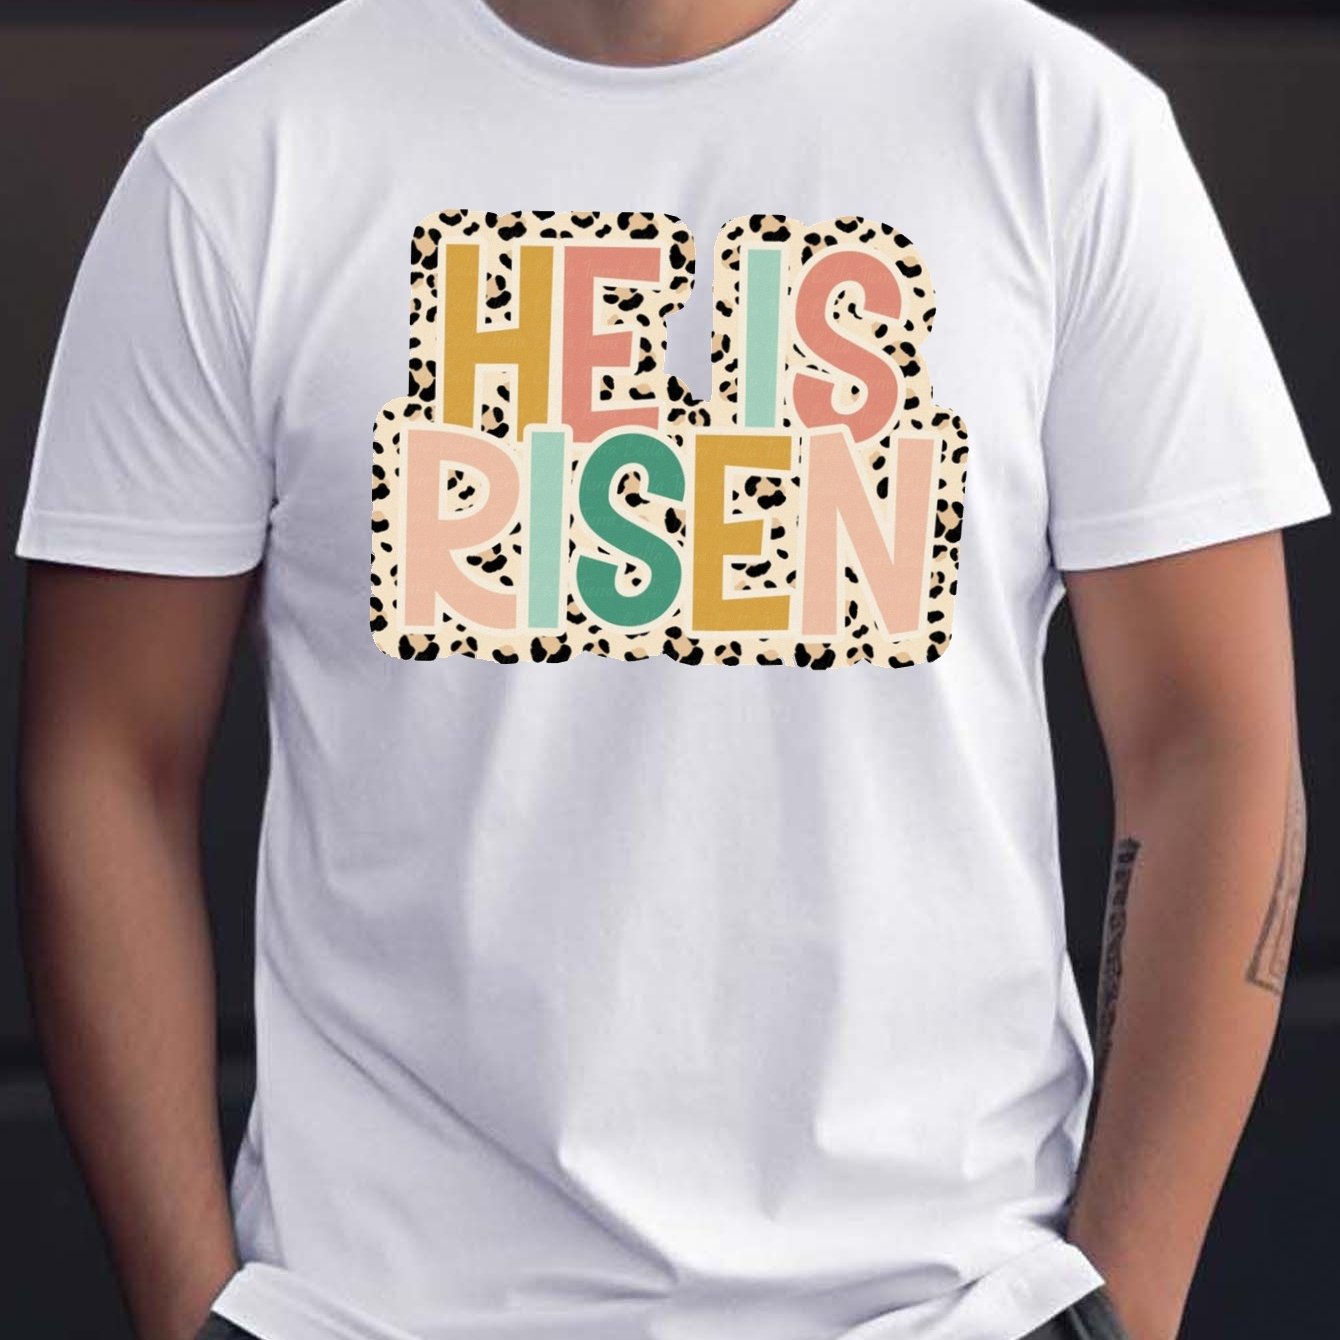 He Is Risen Men's Christian T-Shirt claimedbygoddesigns